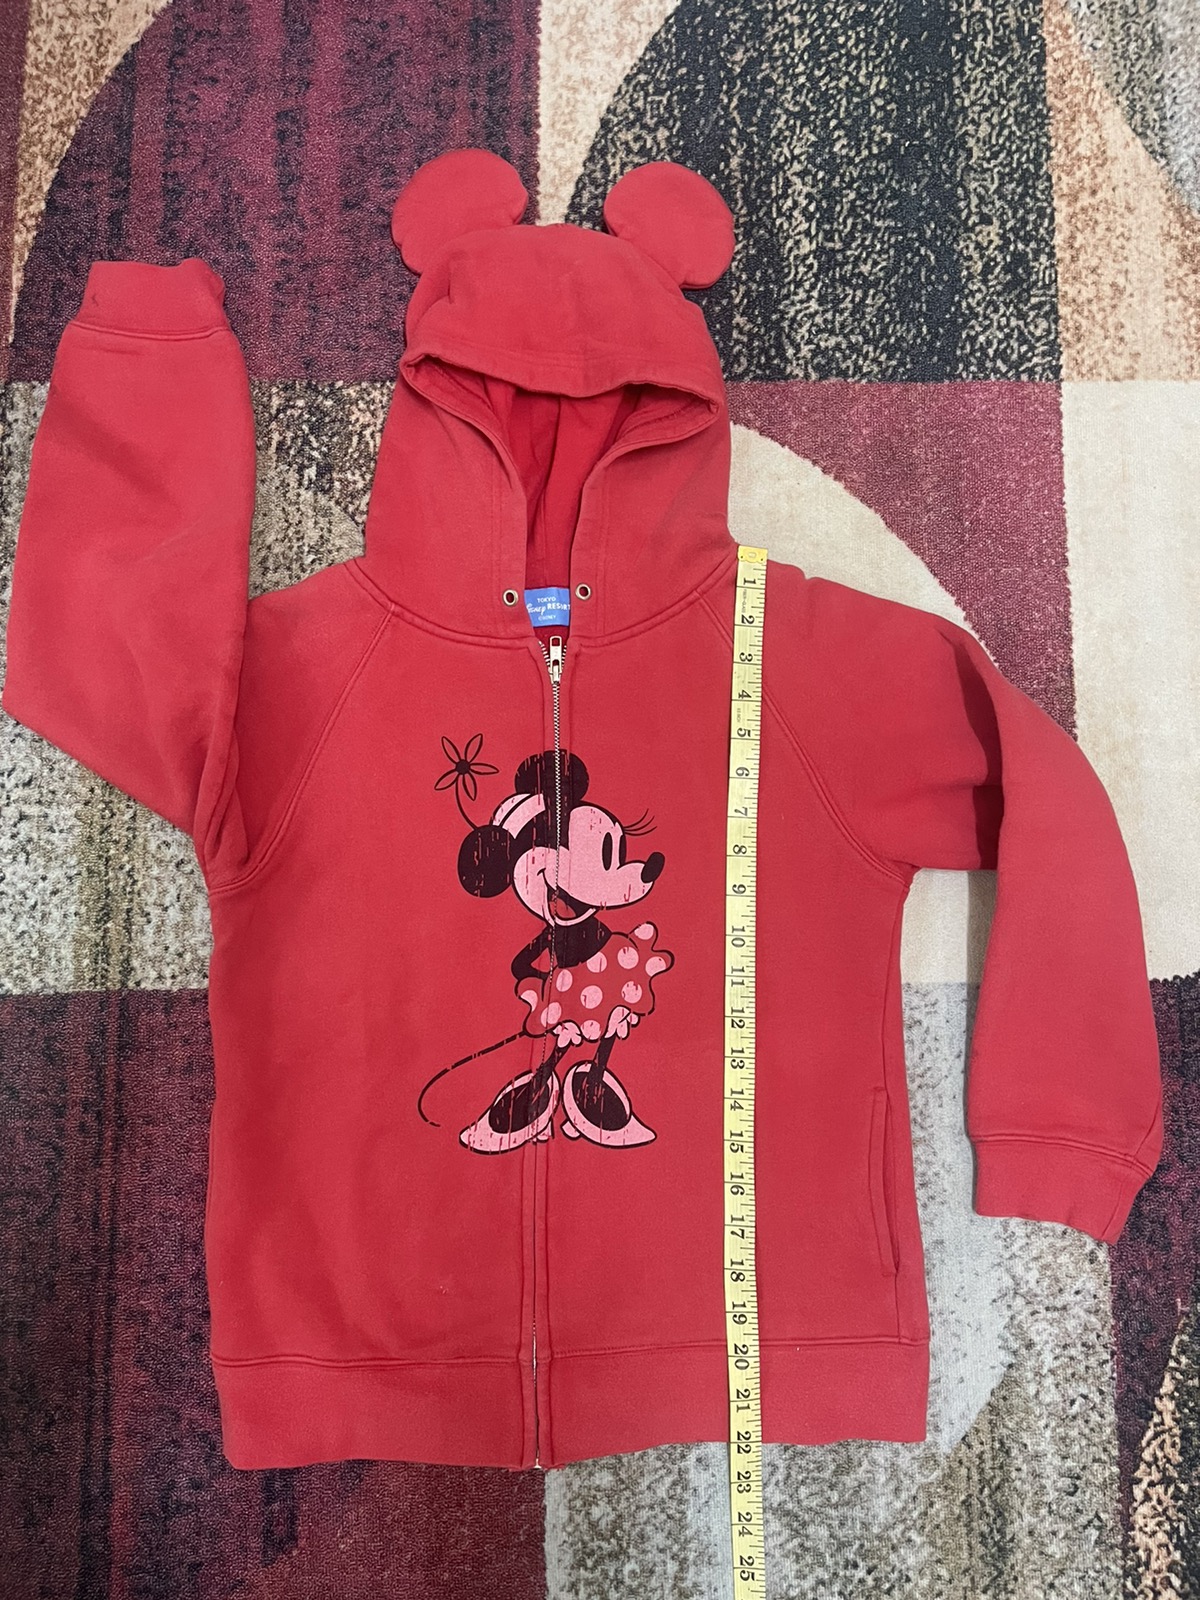 Mickey Mouse - Minnie / Disney Zip Up Hoodie Japan Designer / Streetwear - 3